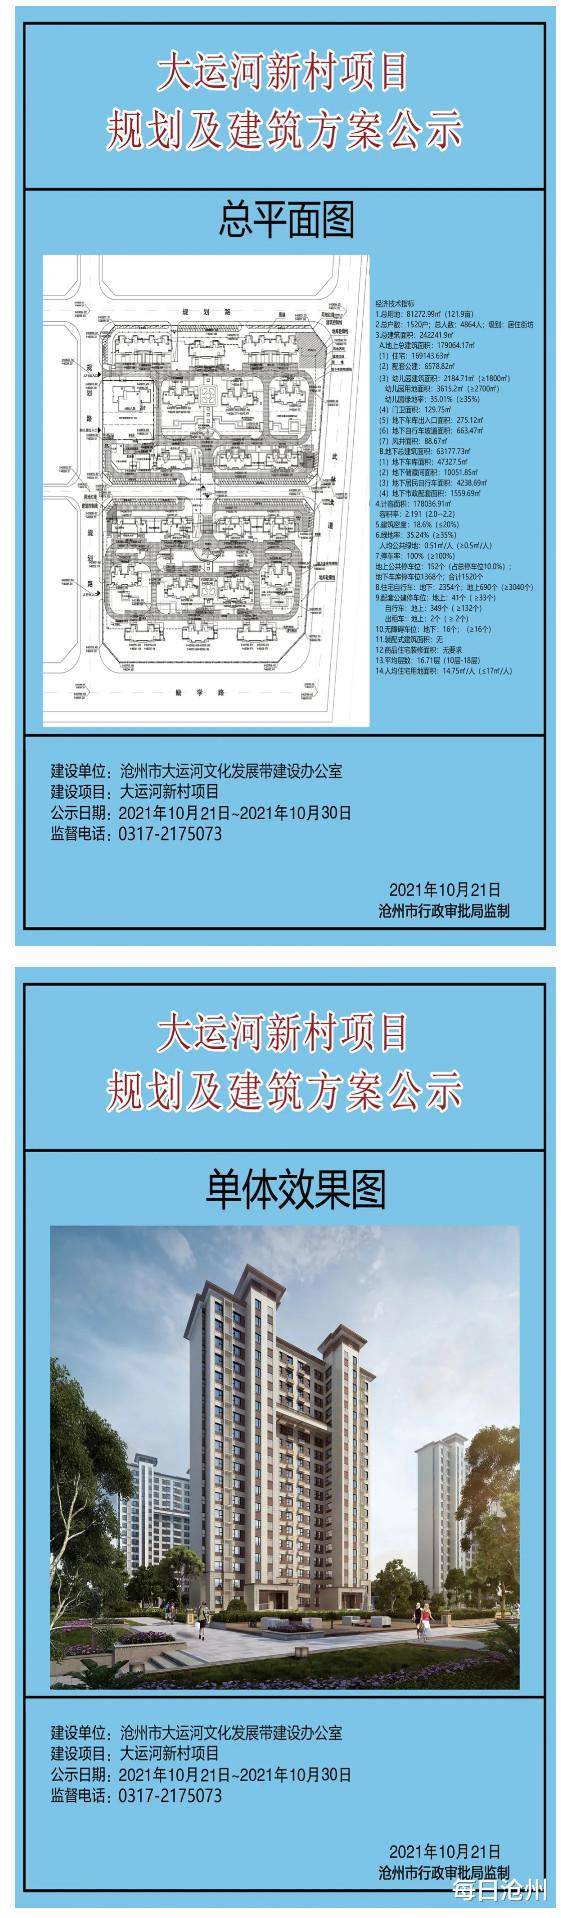 10月21日,沧州市行政审批局关于大运河新村项目的批前公示.